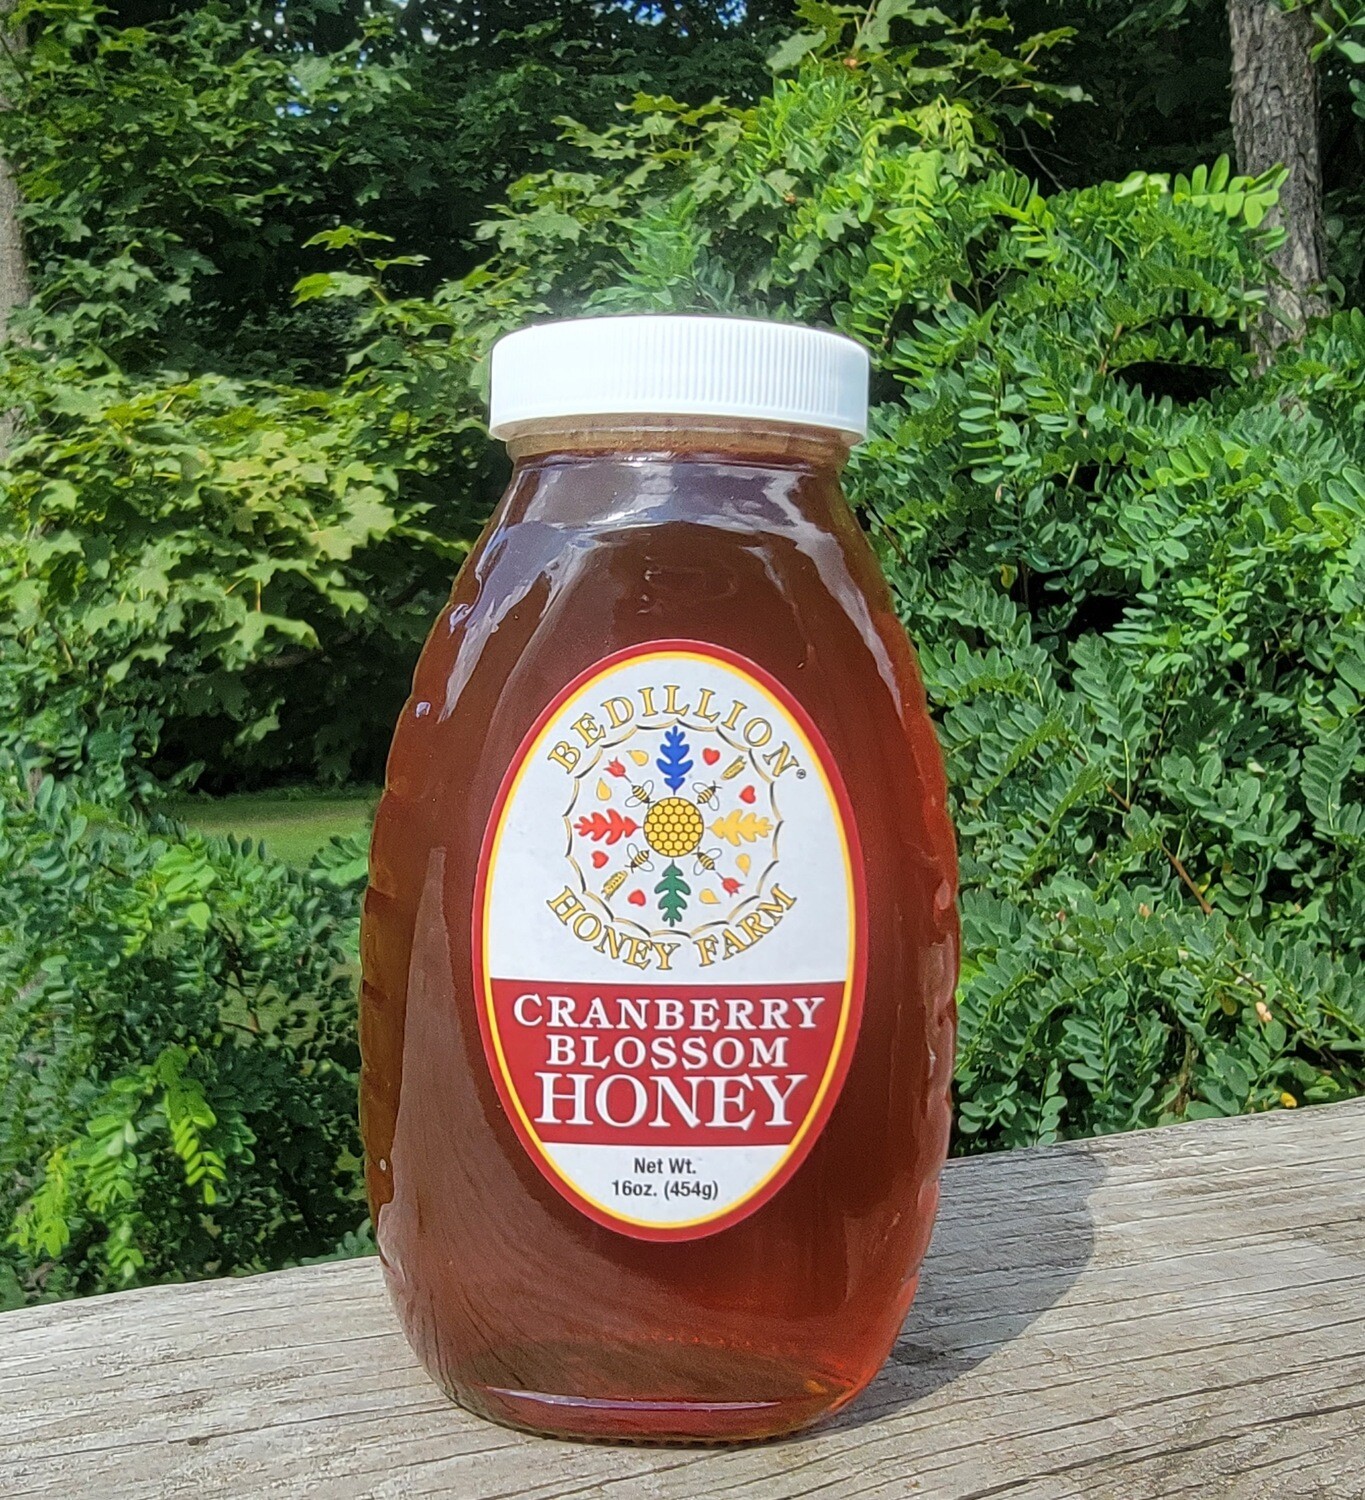 16 oz glass jar of cranberry blossom honey
